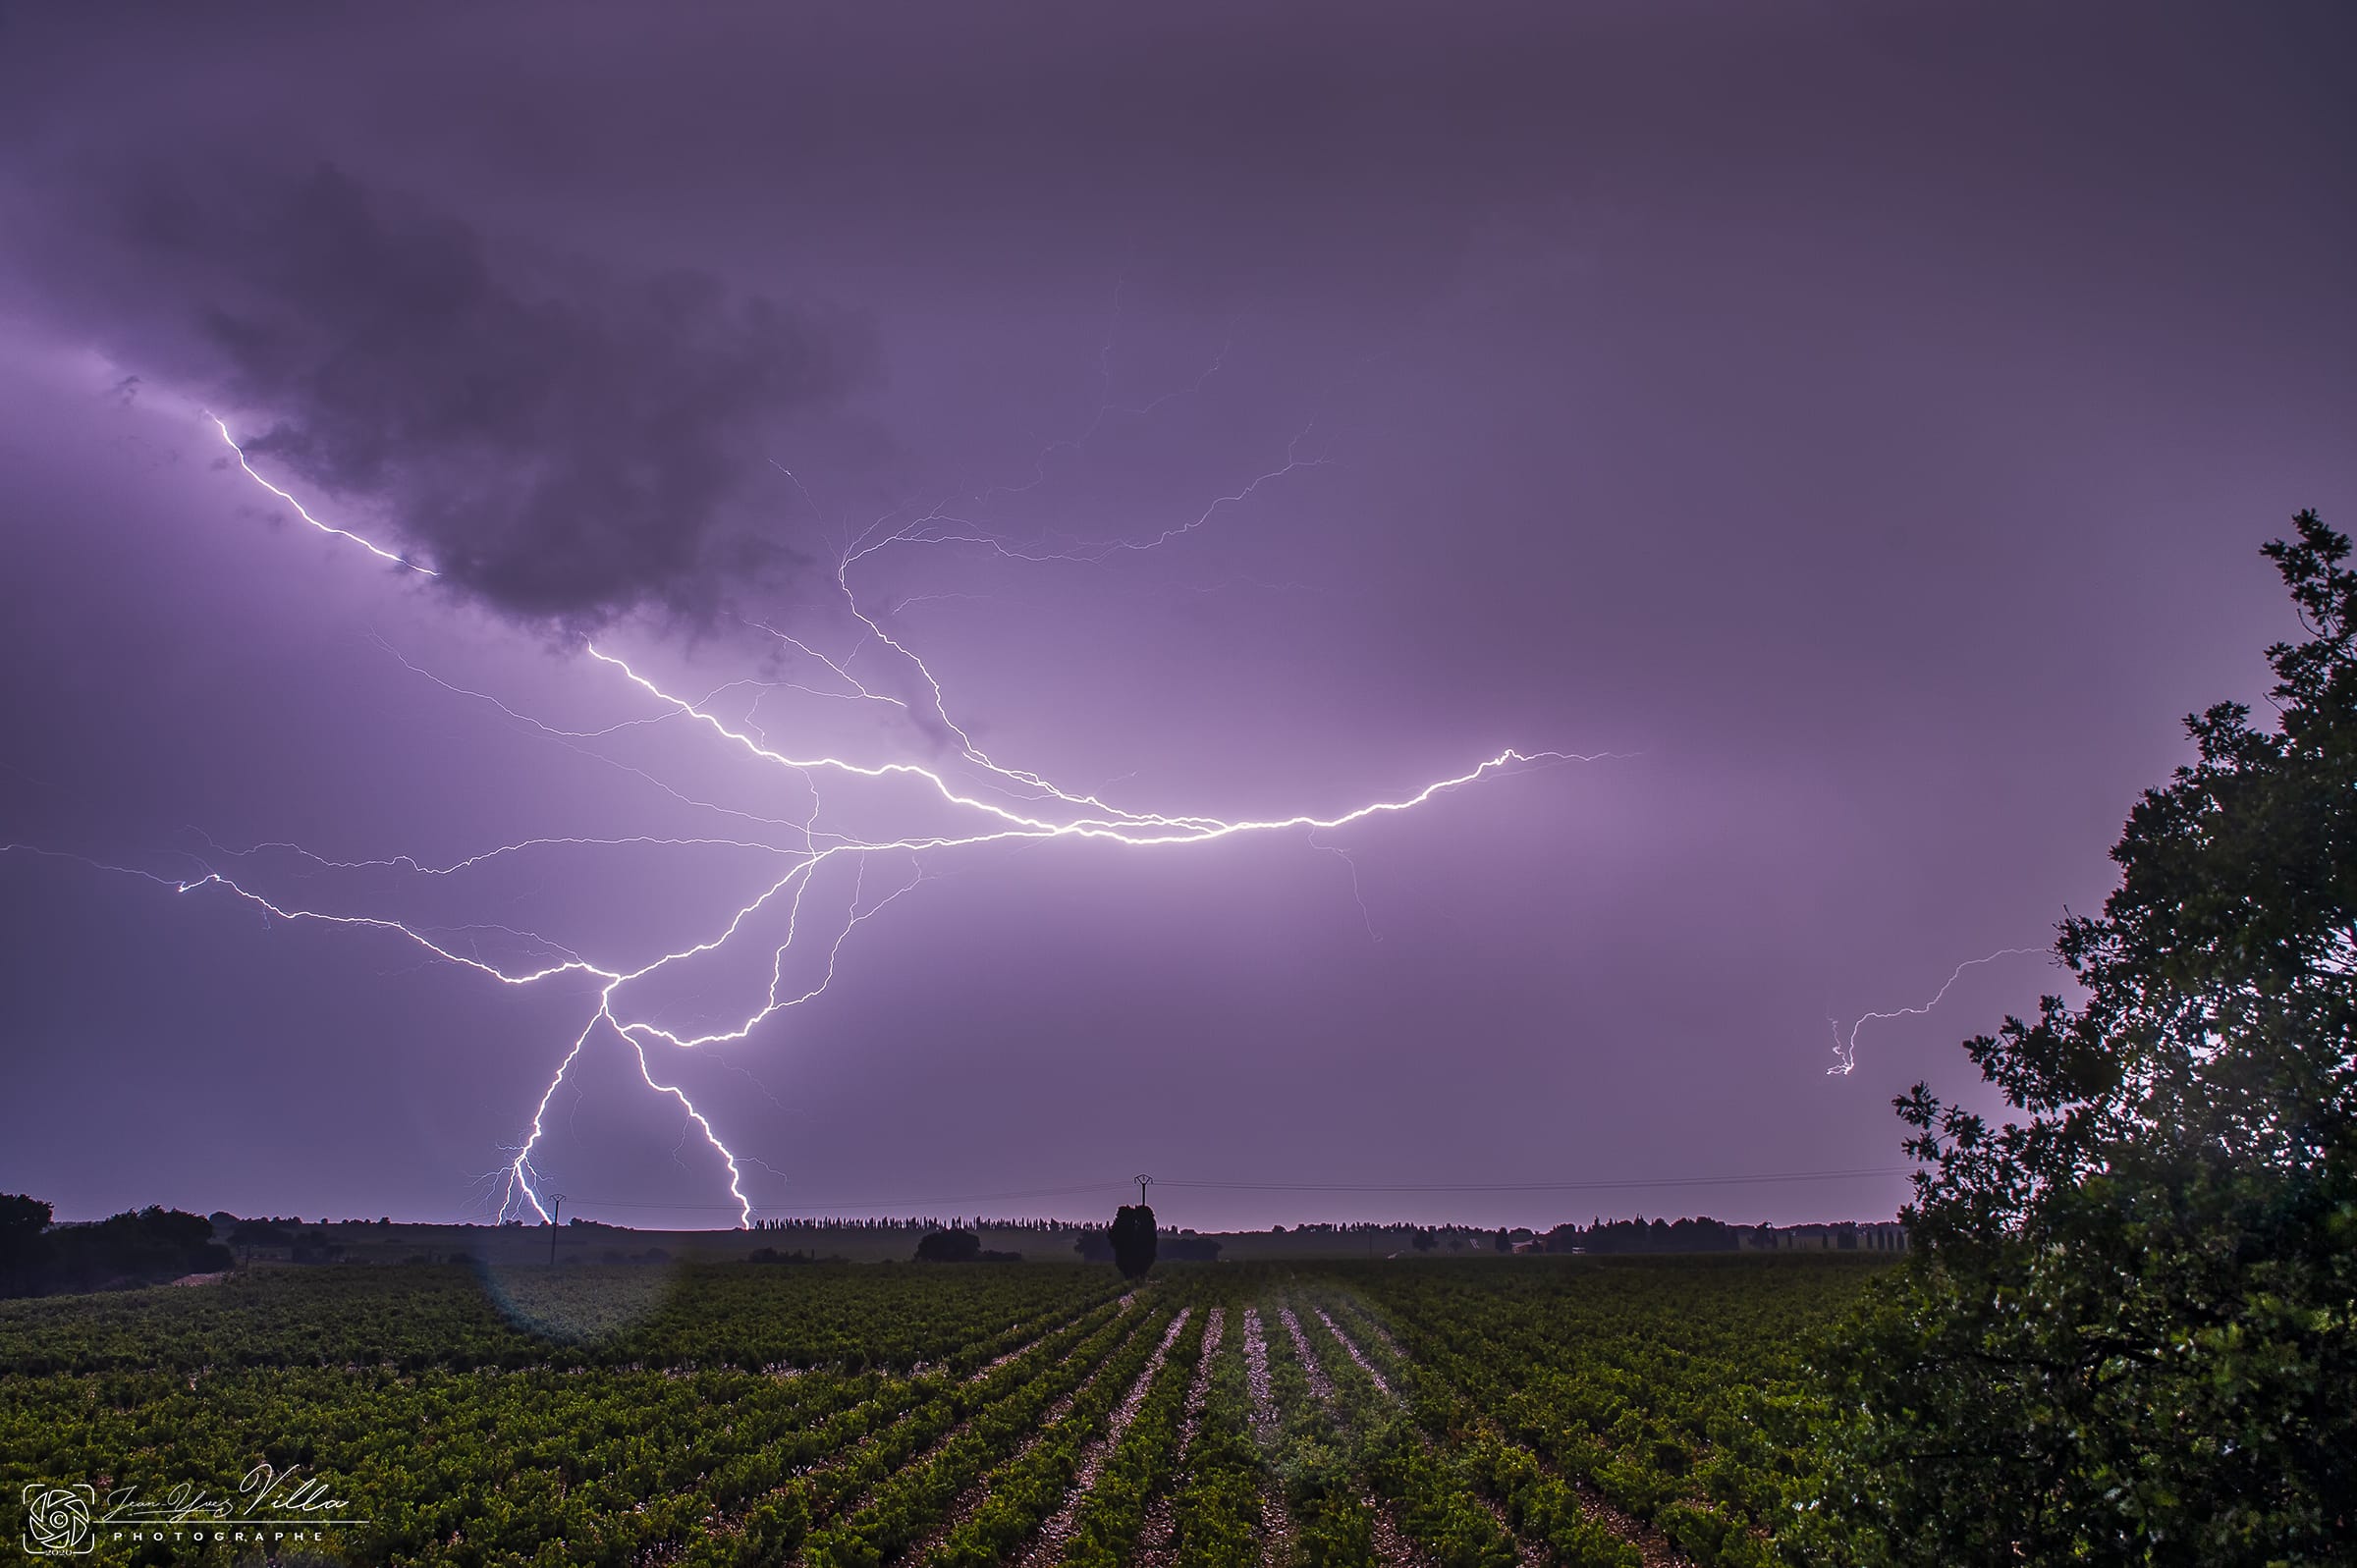 éclair sur le nord Vaucluse au dessus de la ville d'Orange photographié depuis les vignes de Chateau-neuf-du-Pape. Beaucoup de pluie. - 20/09/2020 00:21 - Jean-Yves VILLA